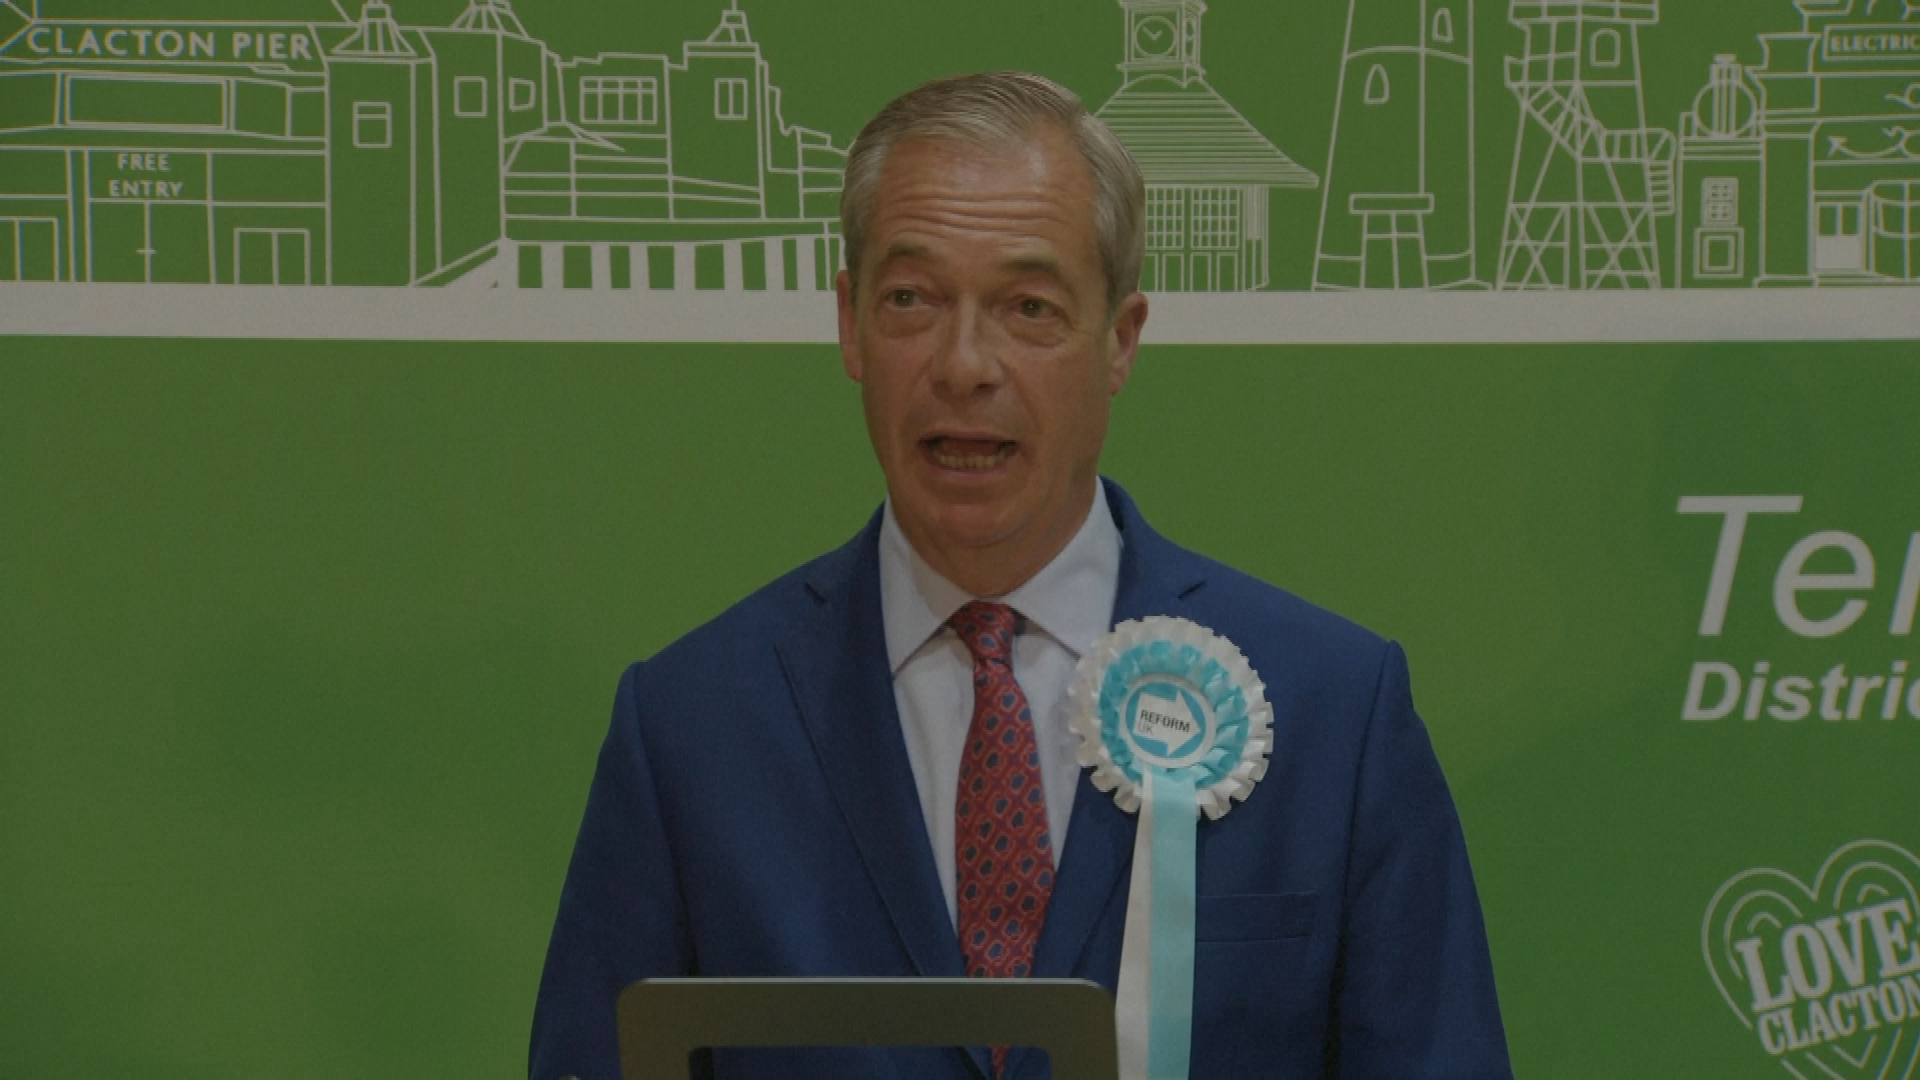 Reform UK leader Nigel Farage speaks after win